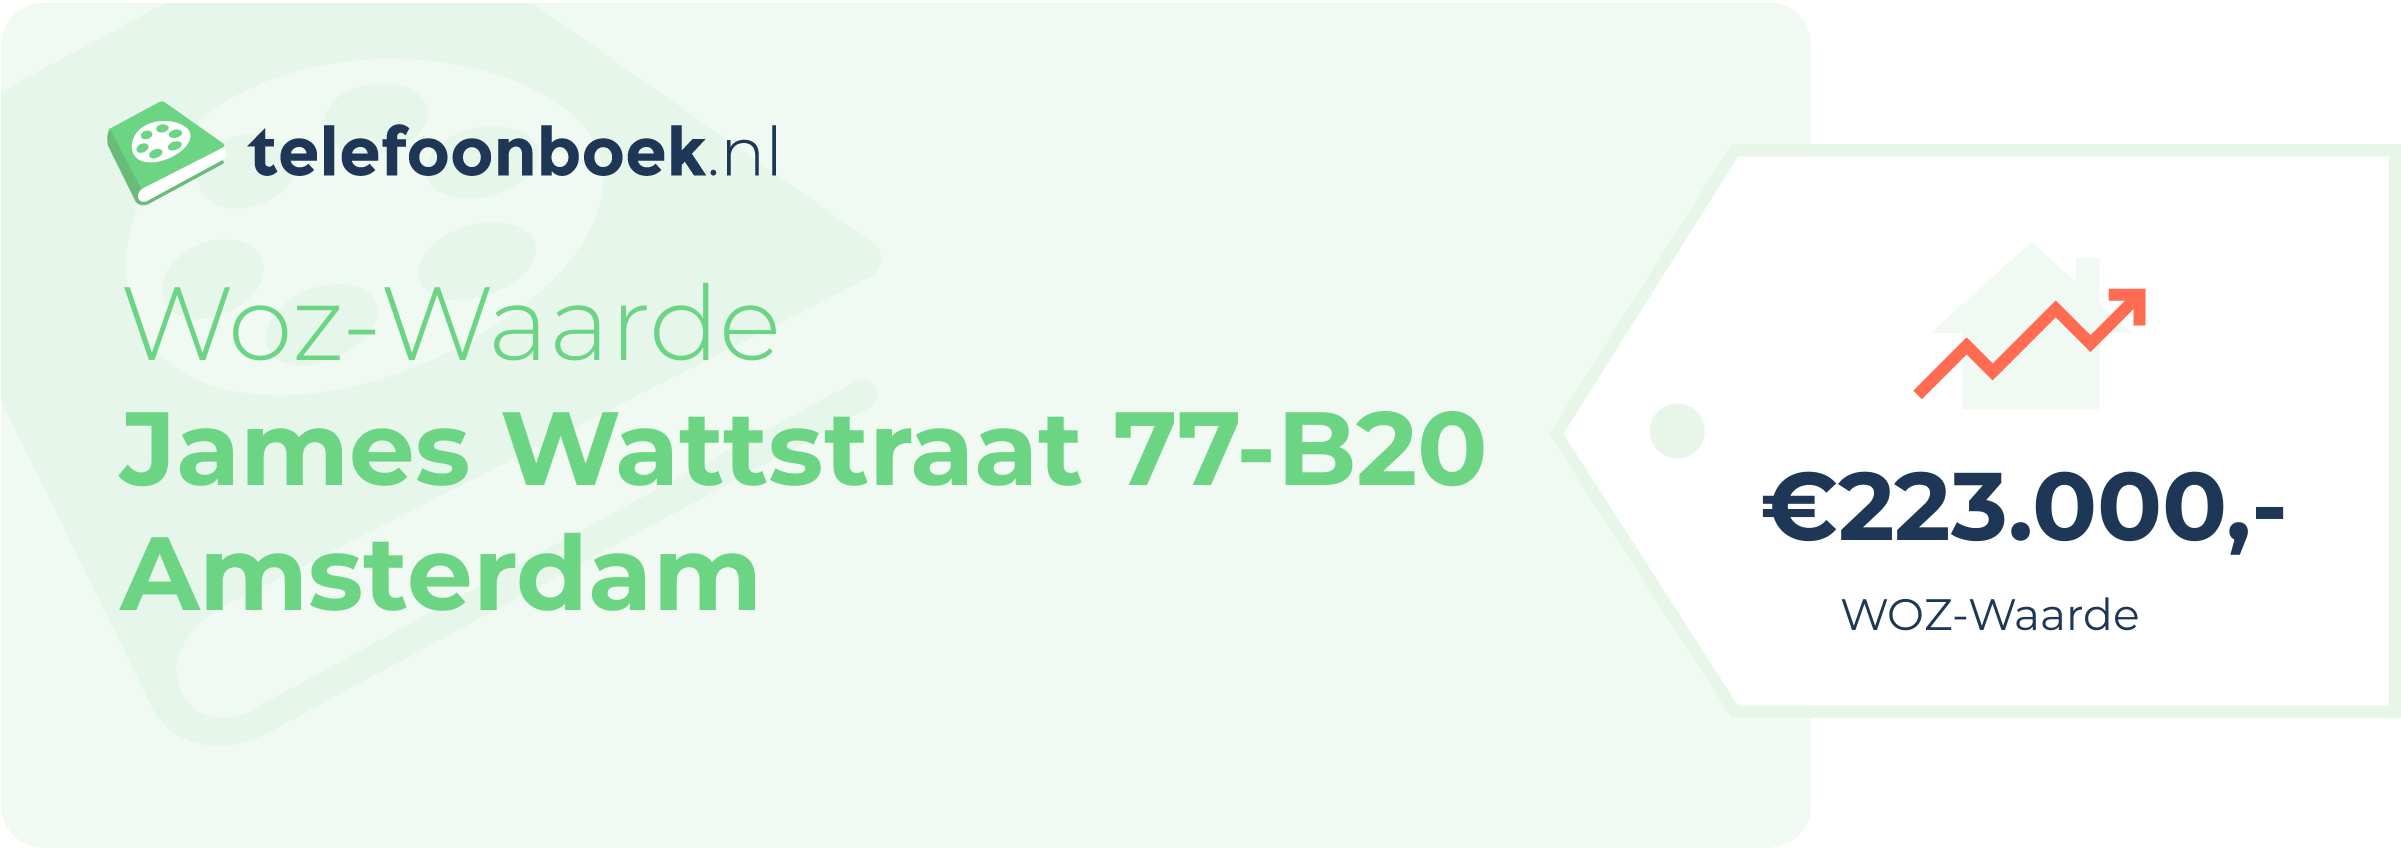 WOZ-waarde James Wattstraat 77-B20 Amsterdam